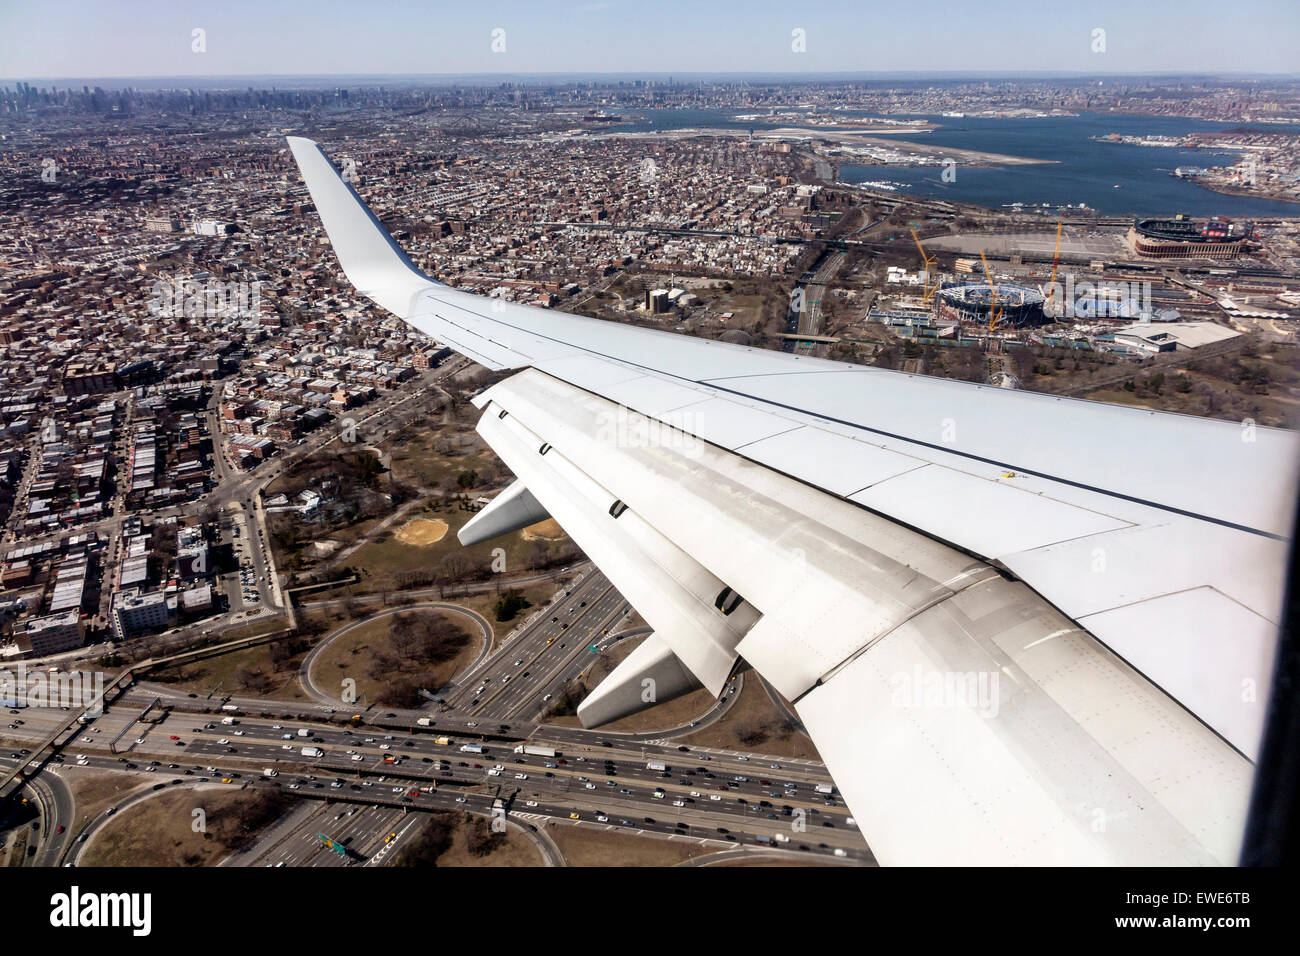 New York City,NY NYC,Northeast,Brooklyn,vista aerea dall'alto,American Airlines,aereo aereo aereo aereo aereo aereo aereo aereo aereo commerciale, aereo, Foto Stock